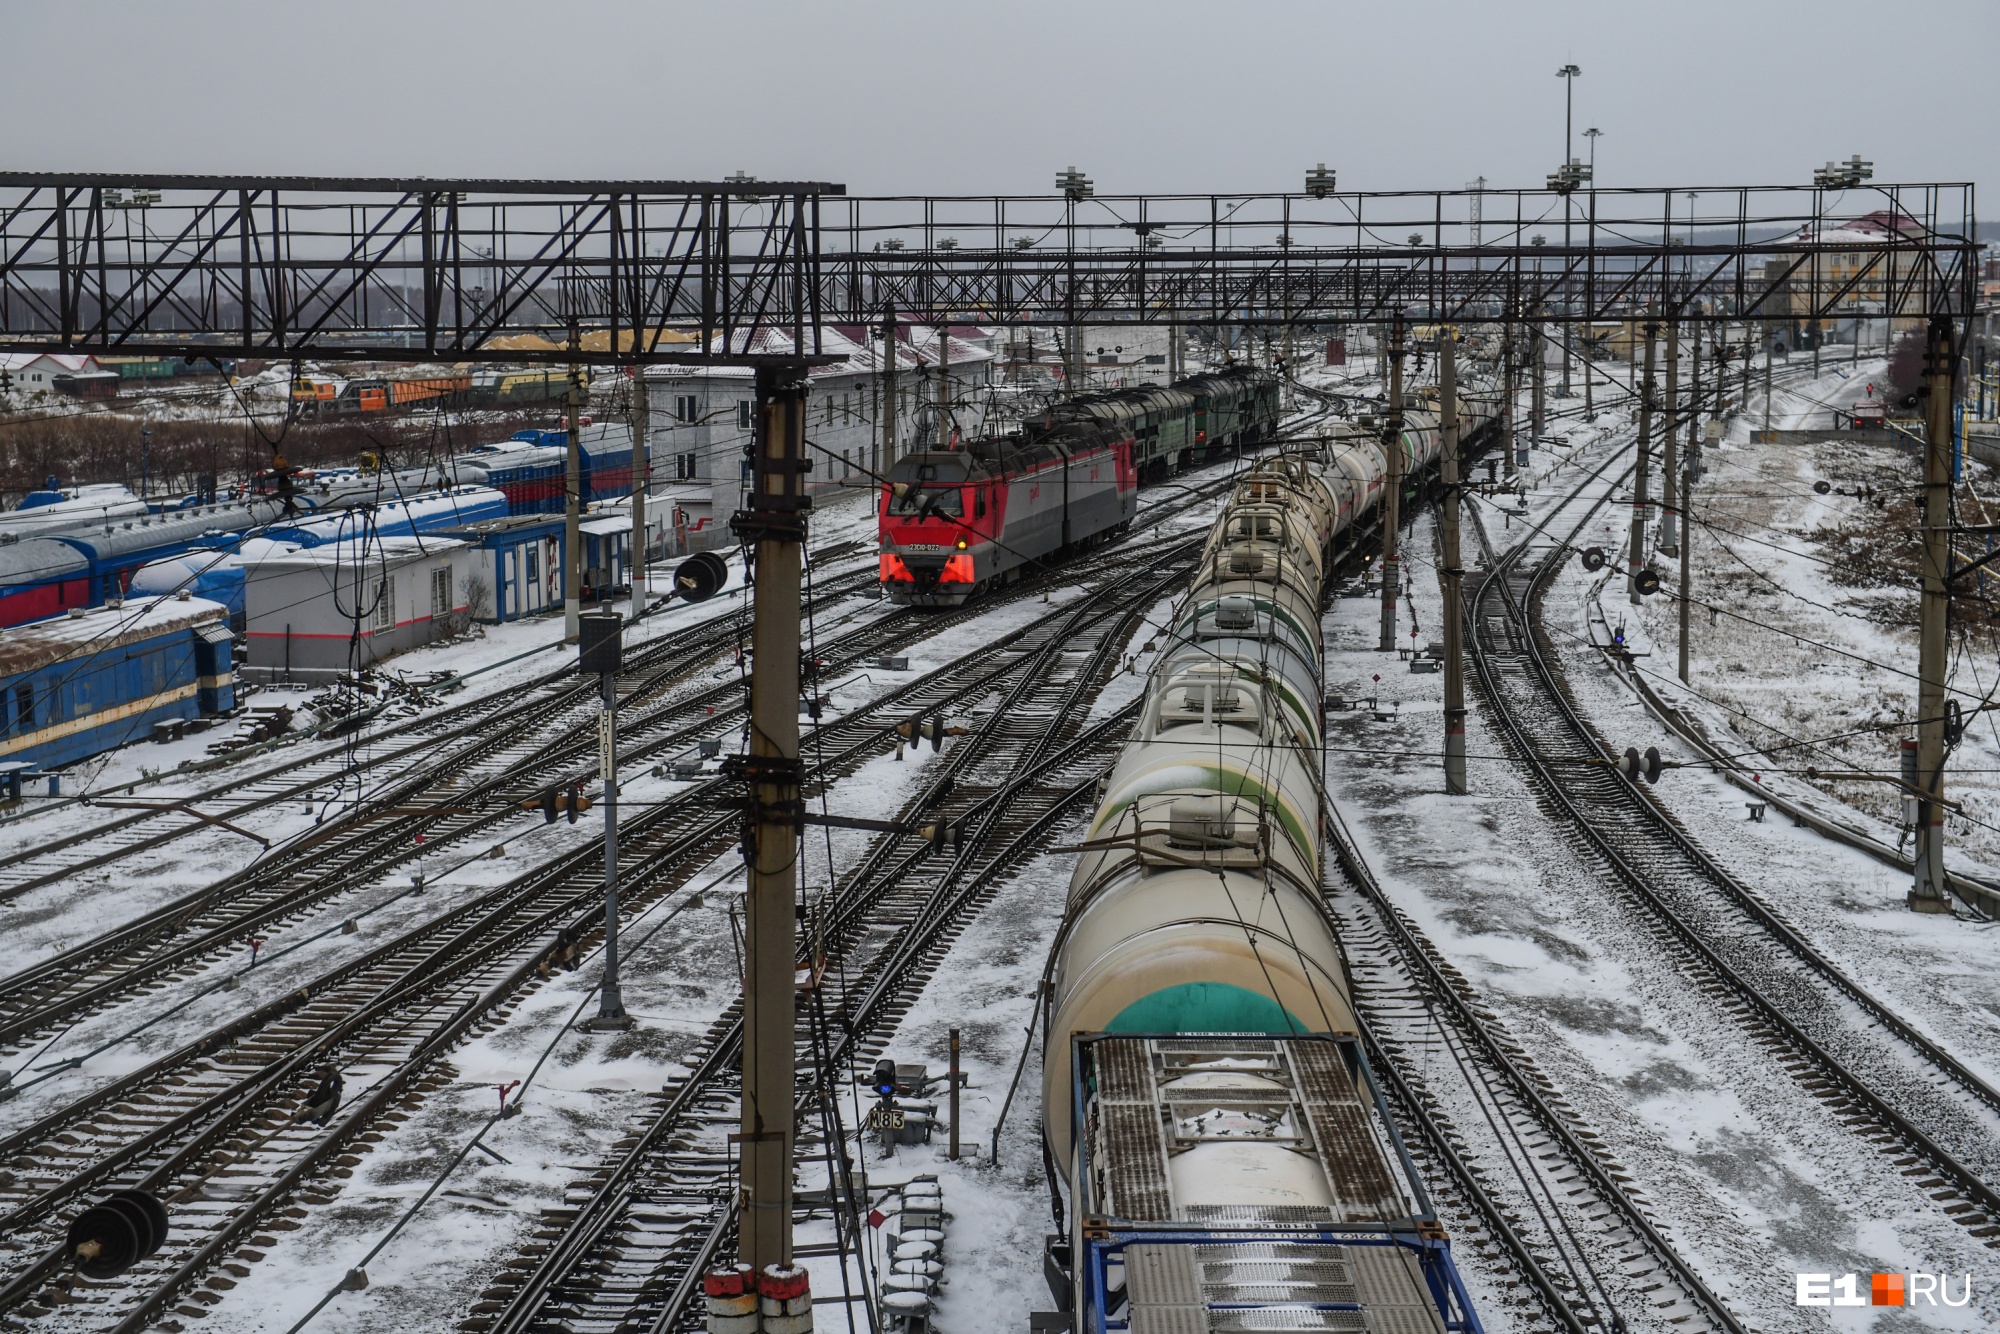 Уральский застройщик начал осваивать огромную промзону рядом с железнодорожным вокзалом